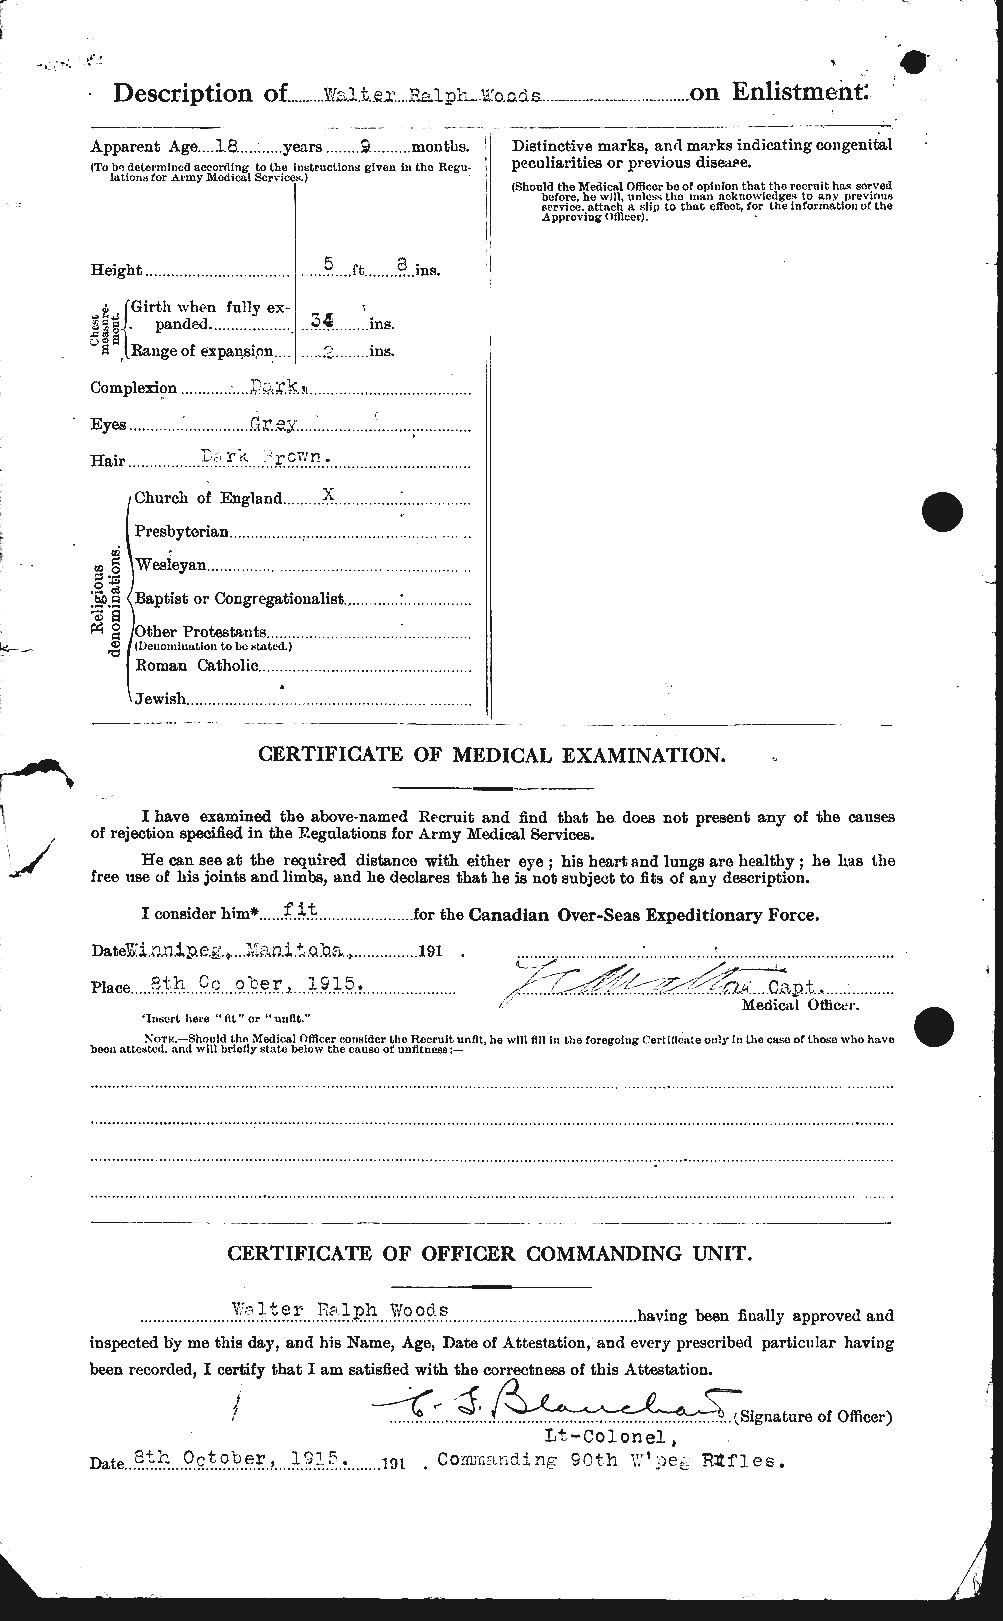 Dossiers du Personnel de la Première Guerre mondiale - CEC 683507b